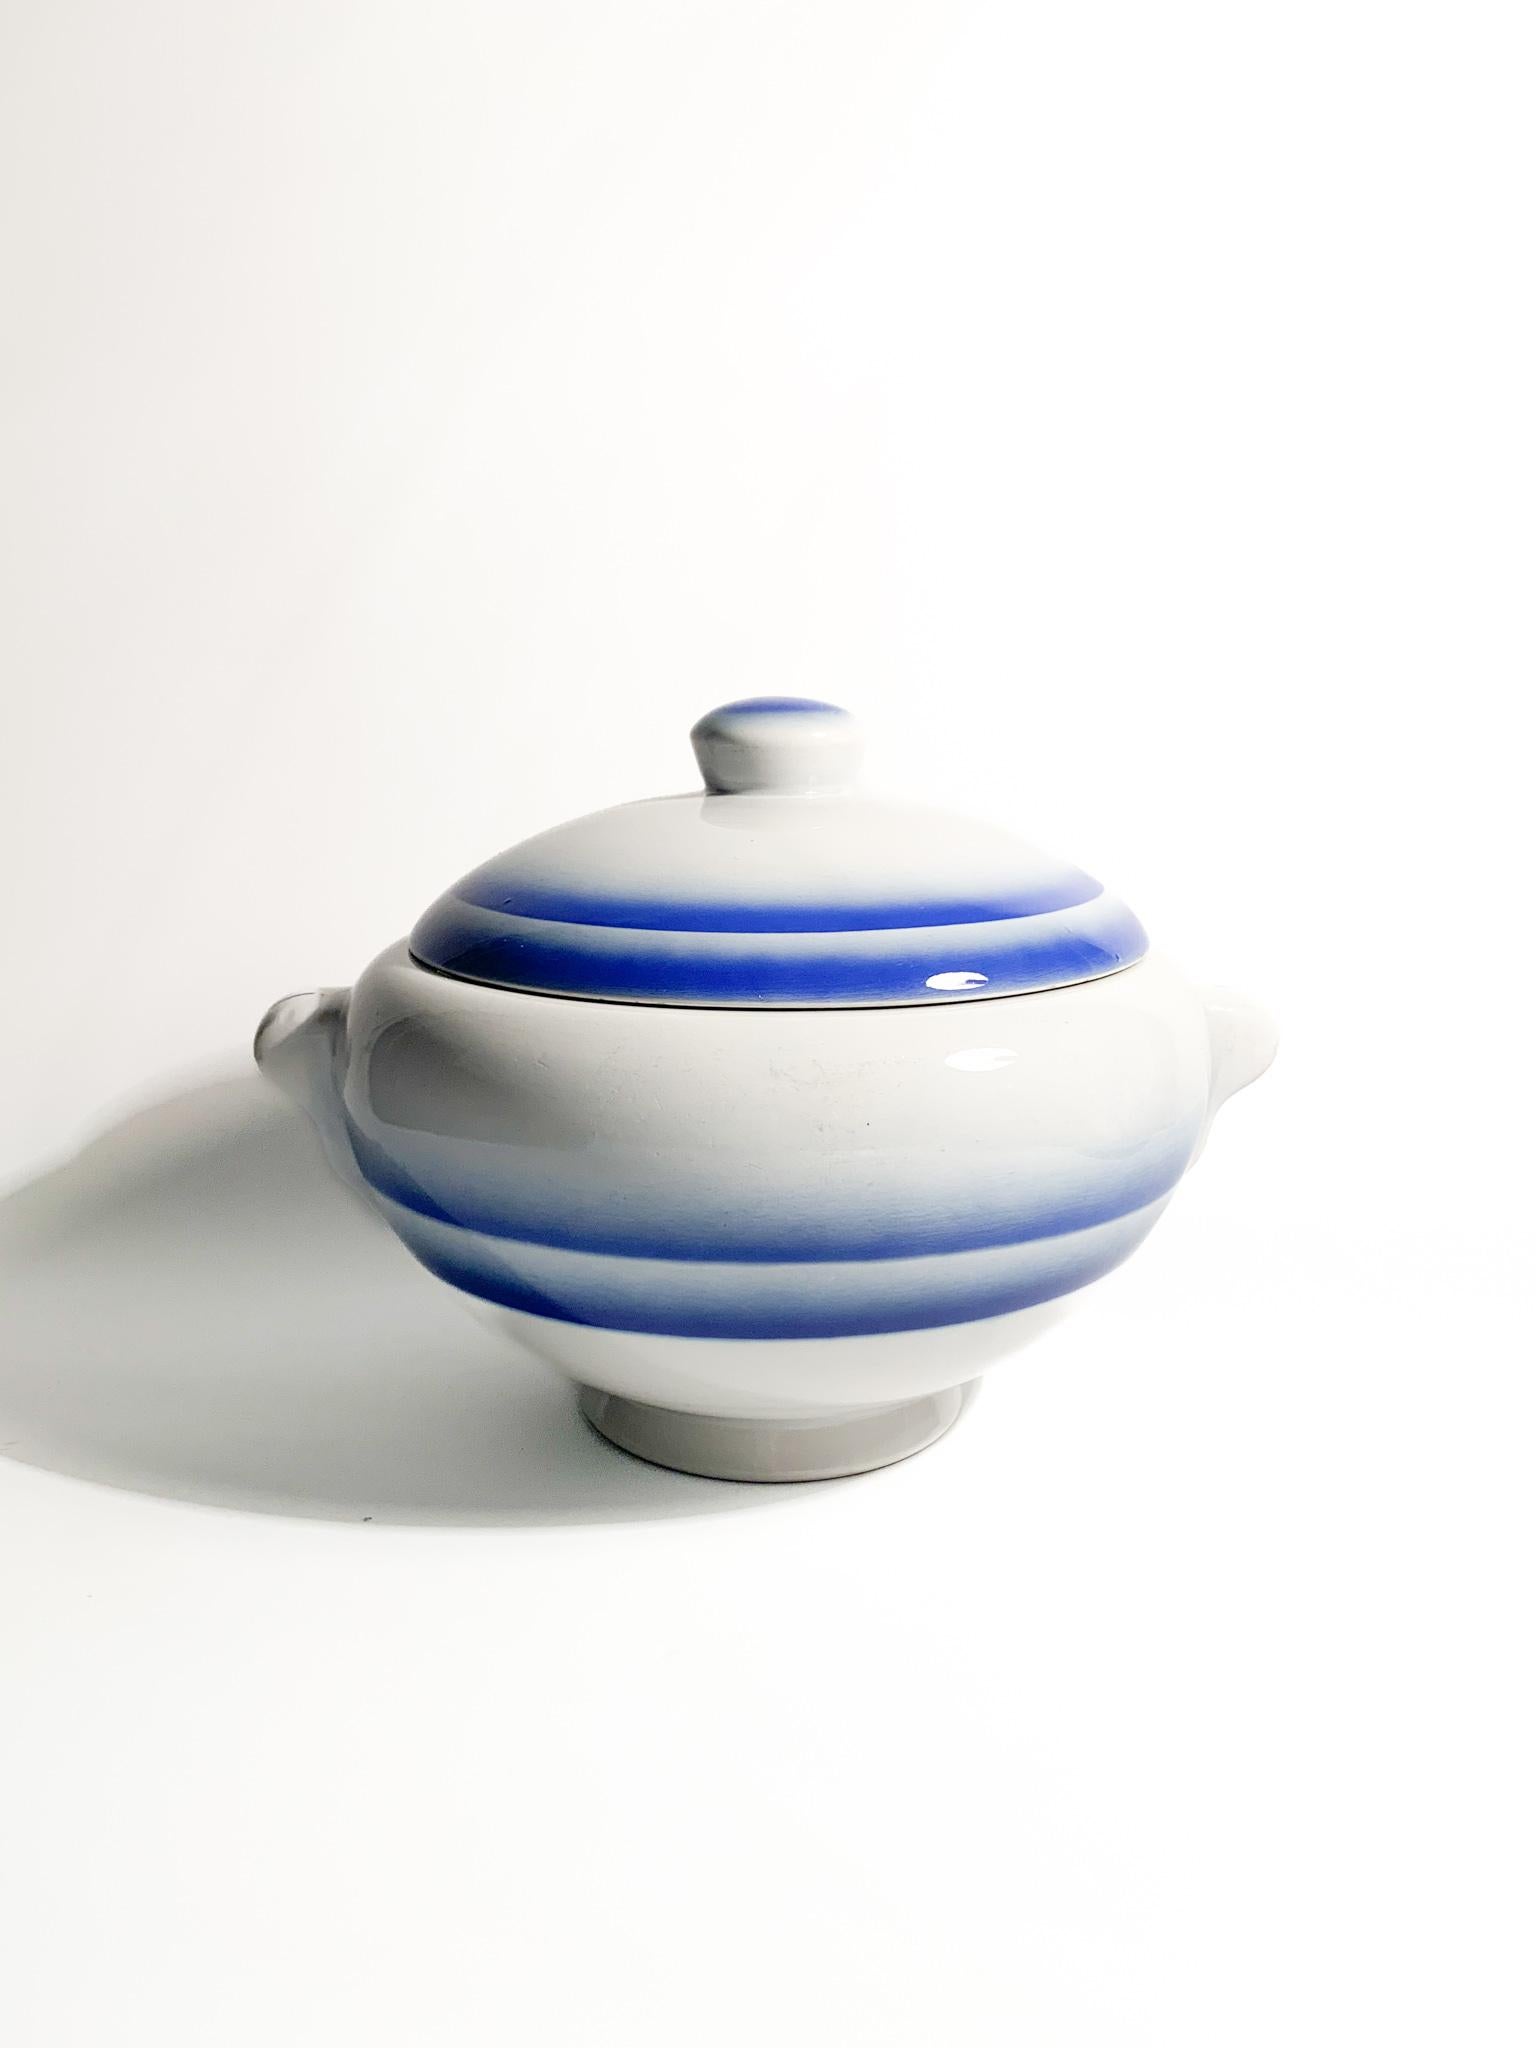 Centrotavola / zuppiera in ceramica bianca e strisce blu, realizzato da Galvani Pordenone negli anni '50

Ø 25 cm h 16 cm

La fabbrica di ceramiche 